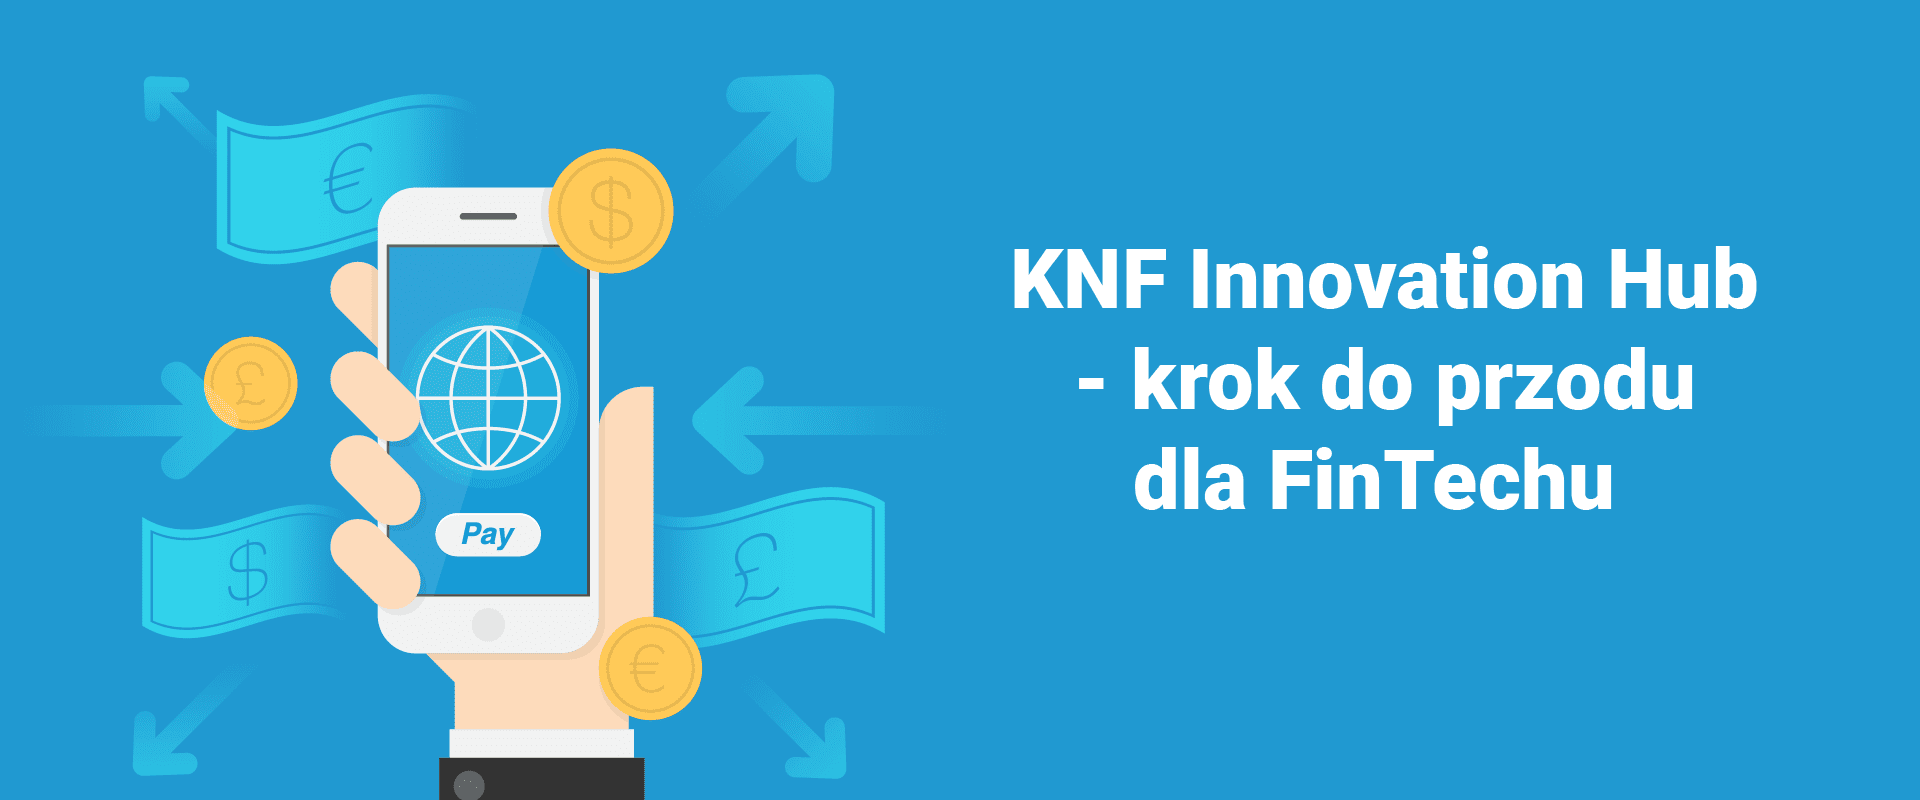 Czym jest KNF Innovation Hub?